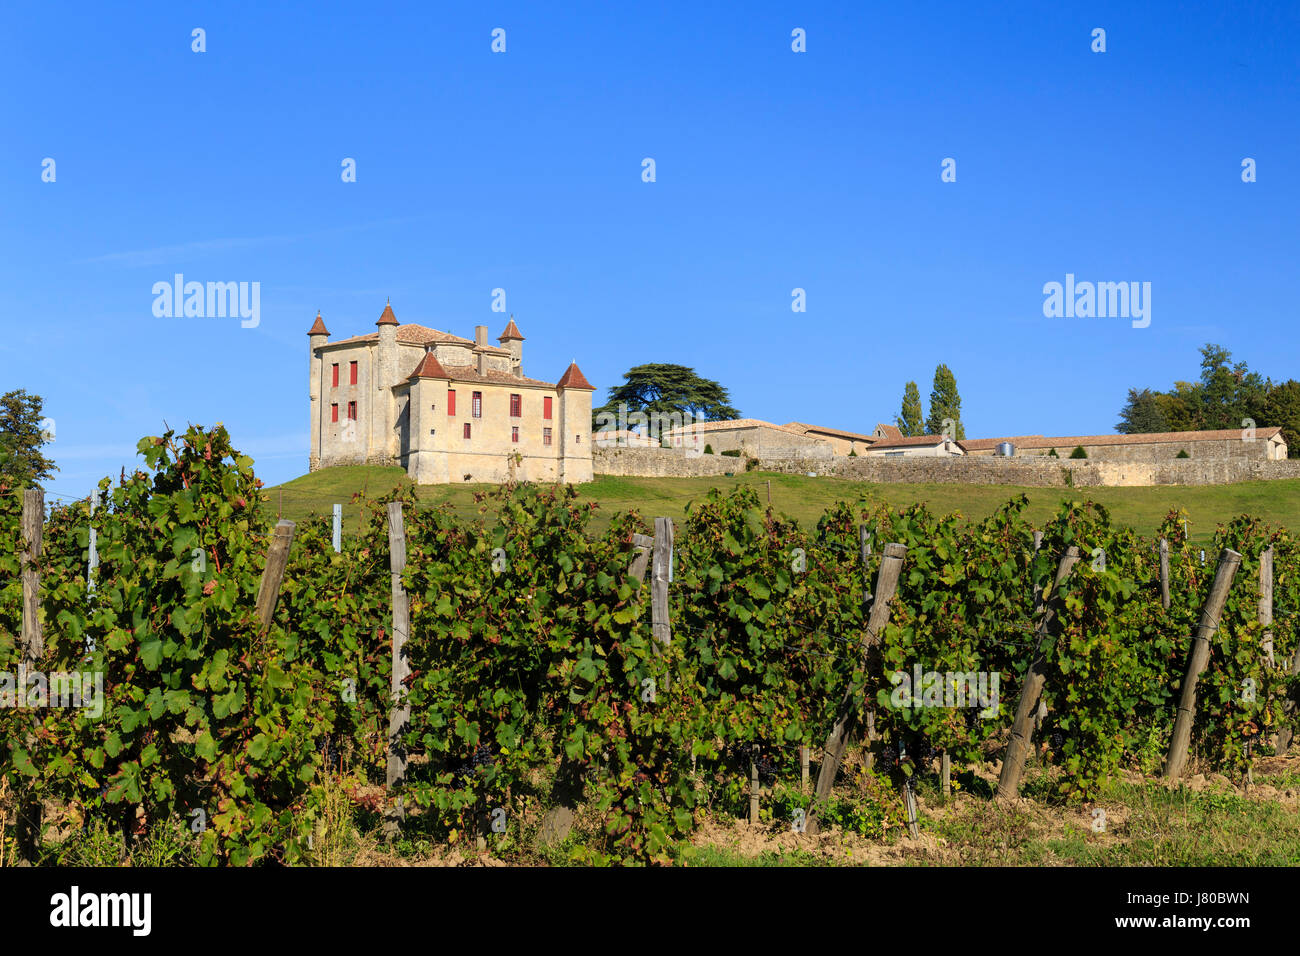 France, Gironde, Puisseguin, chateau de Monbadon and the vineyard A.O.C puisseguin saint emilion Stock Photo